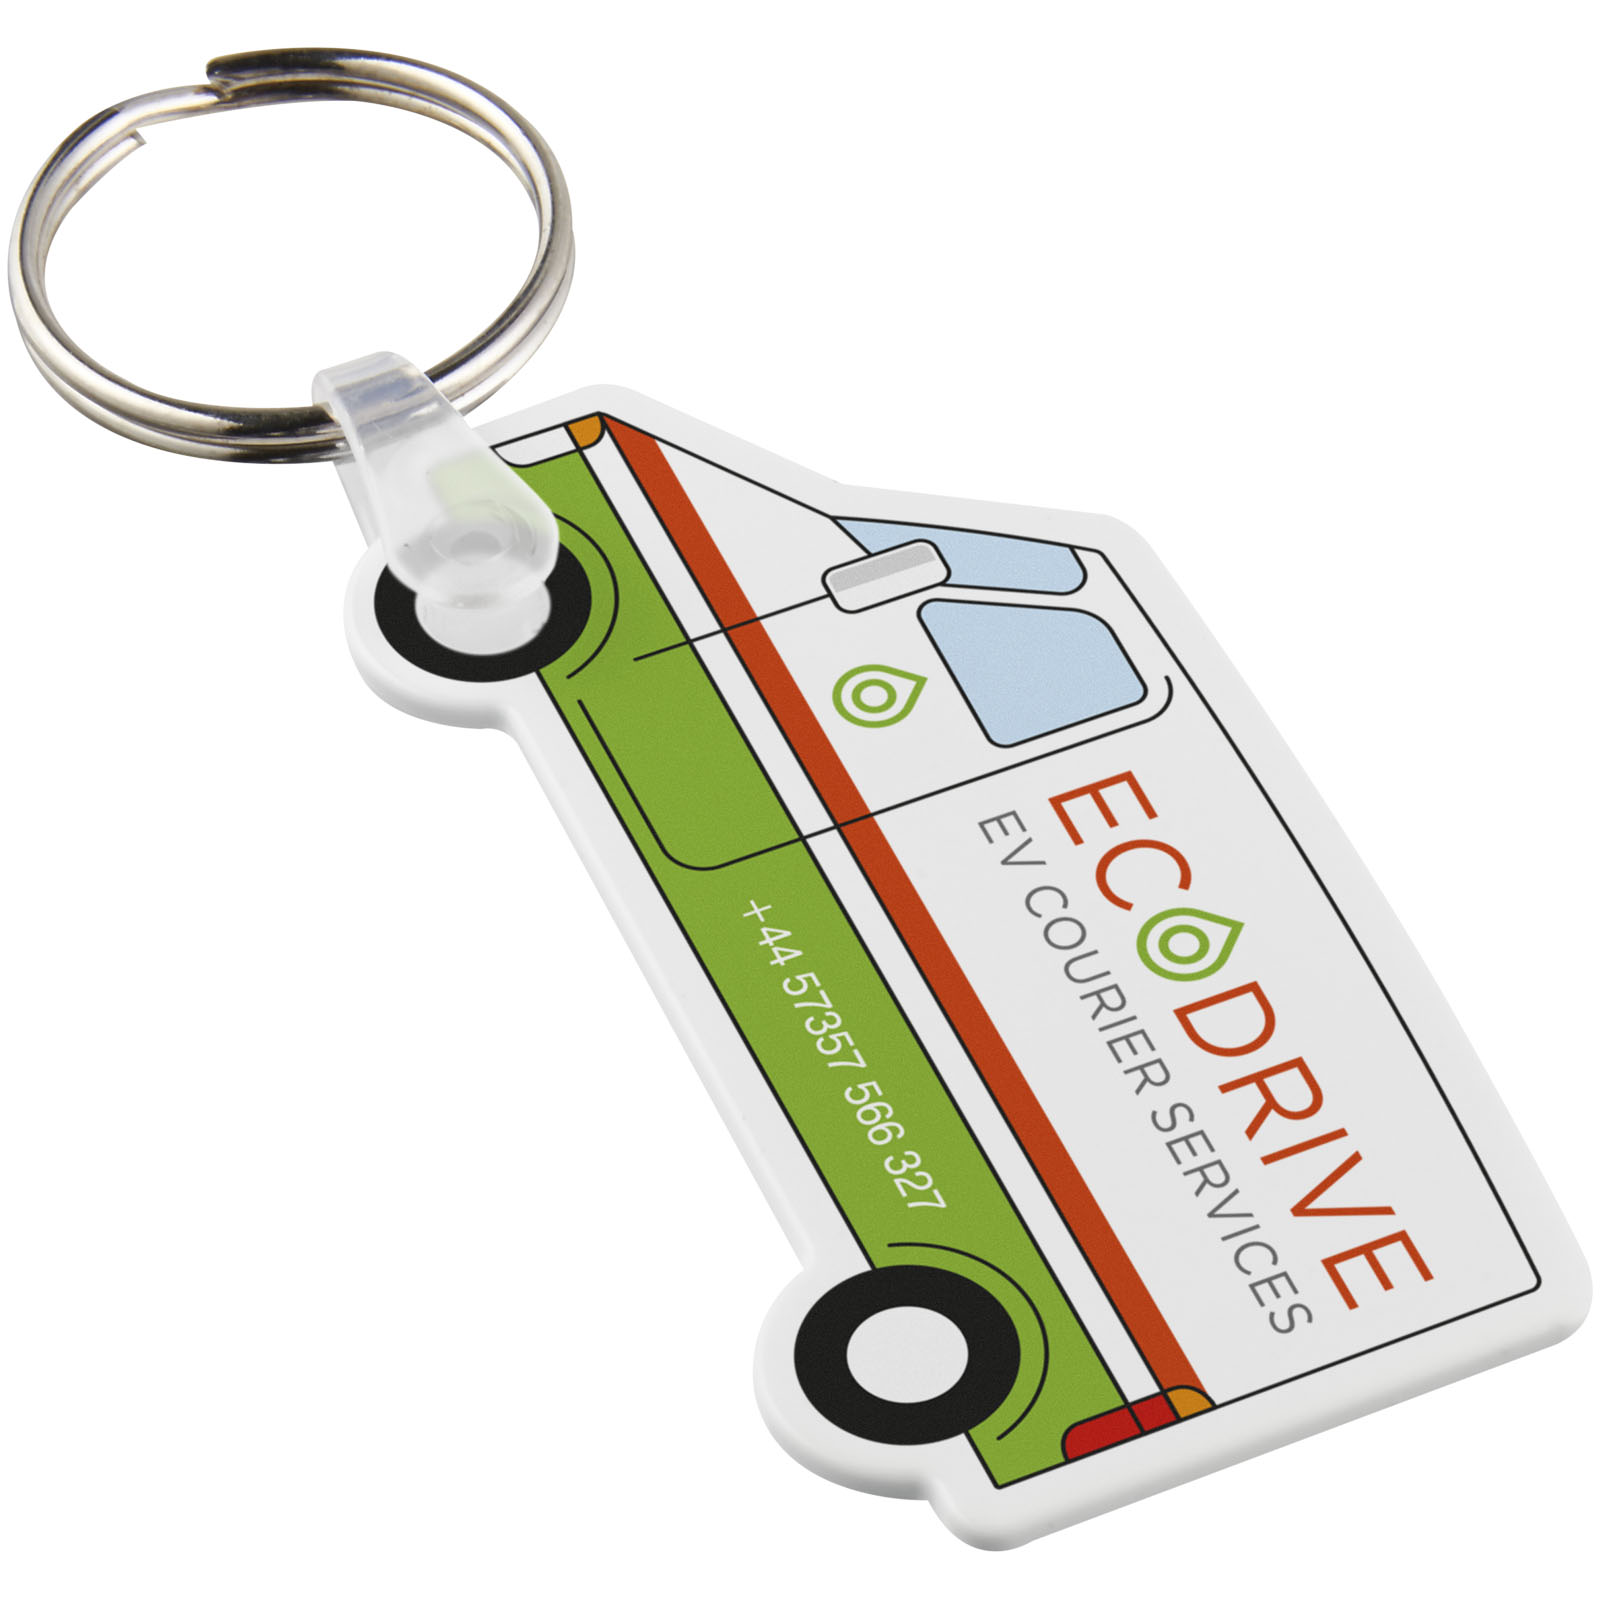 Porte-clés publicitaires - Porte-clés recyclé Tait en forme de minibus - 0